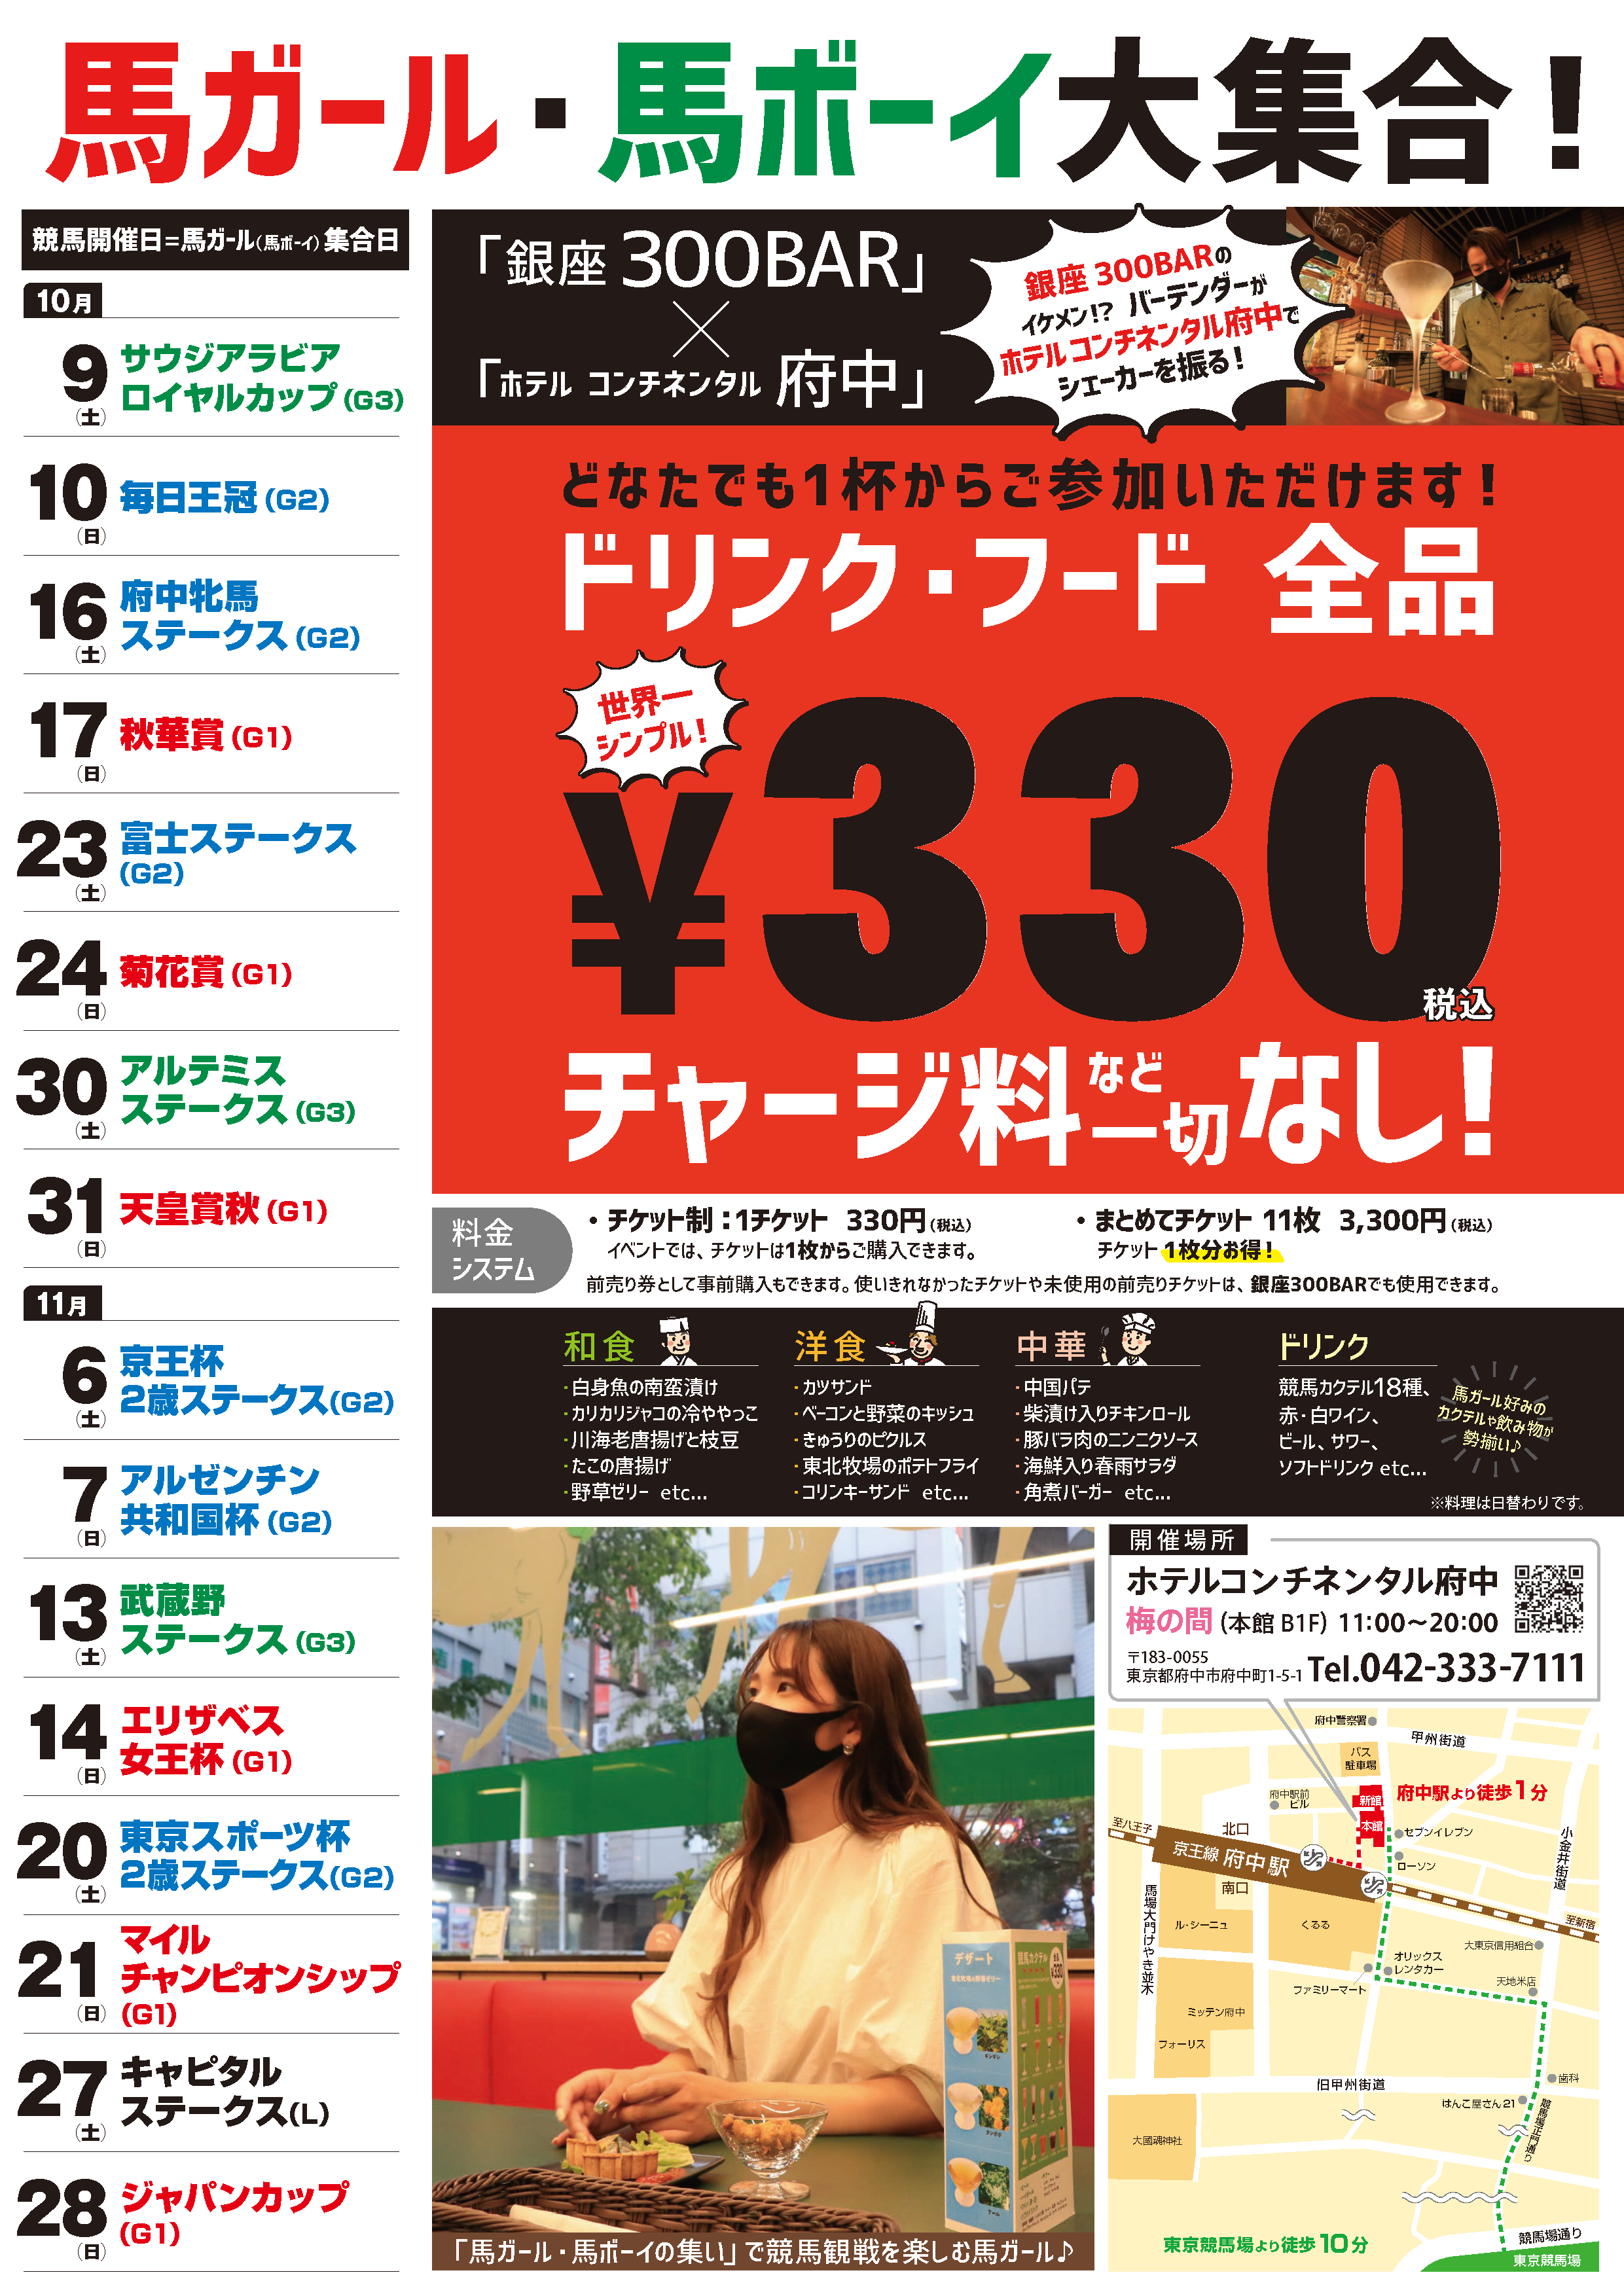 11月13日「日刊ゲンダイ」様に、当ホテルの「馬イベント」の記事を掲載していただきました。